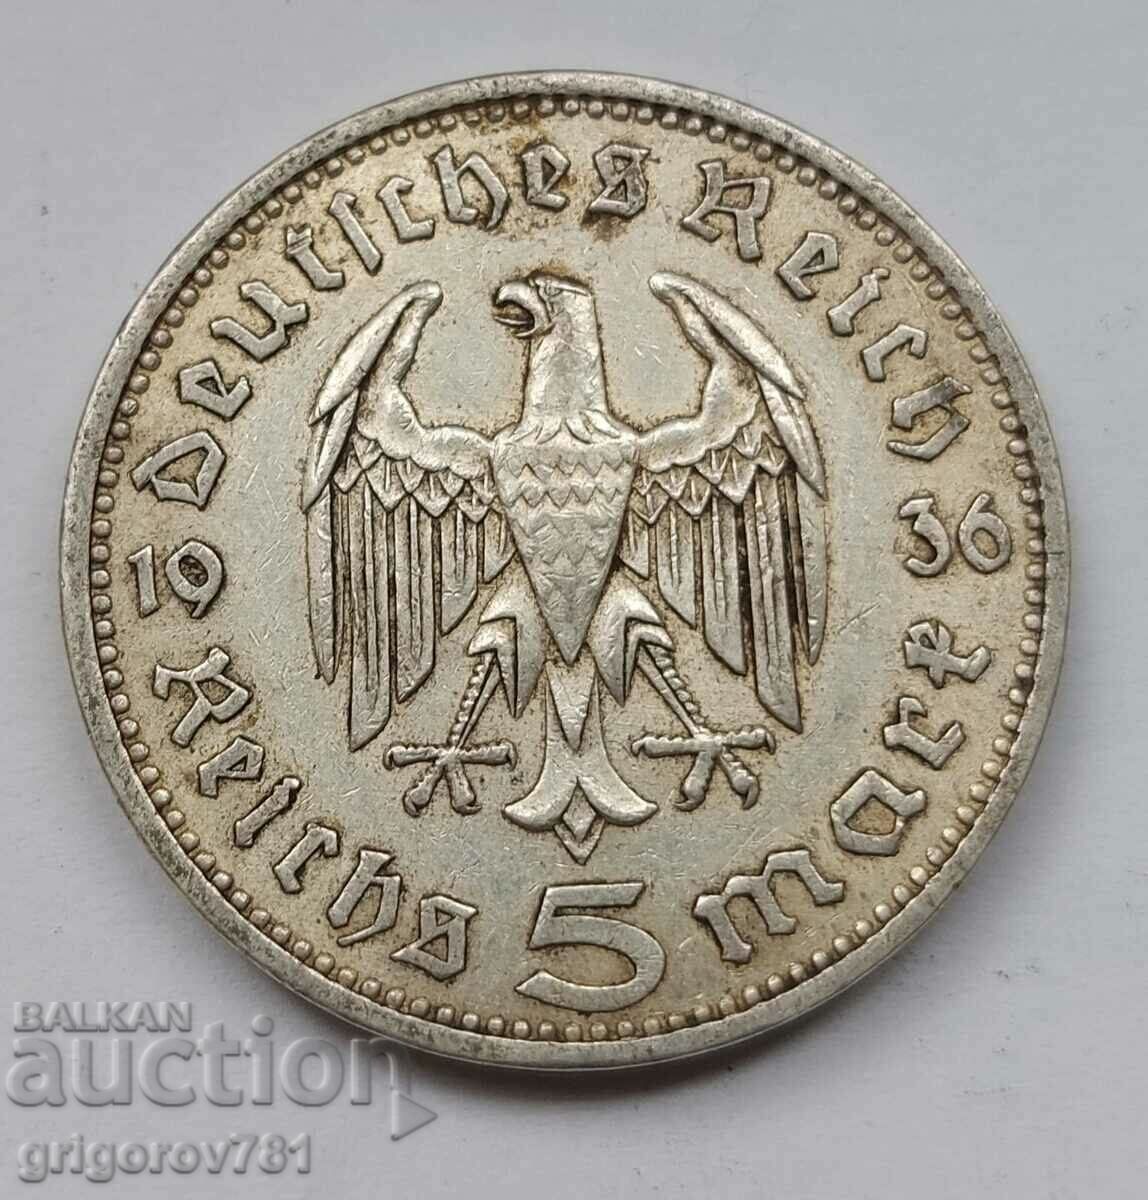 5 марки сребро Германия 1936 A III Райх  сребърна монета №15